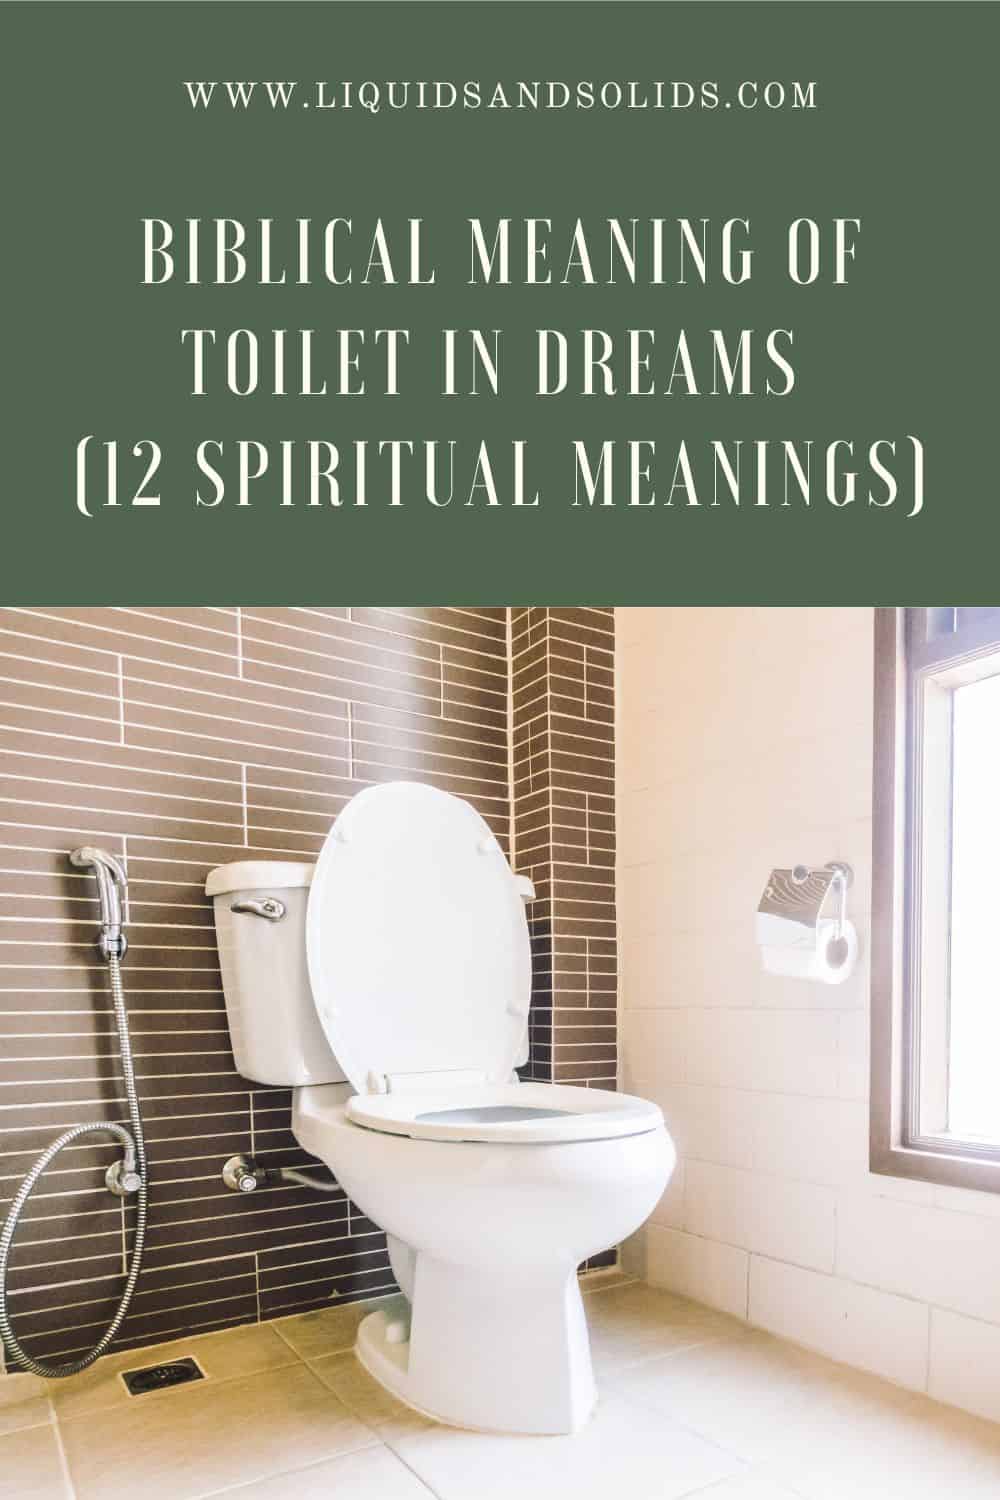  11 浴室梦的解释